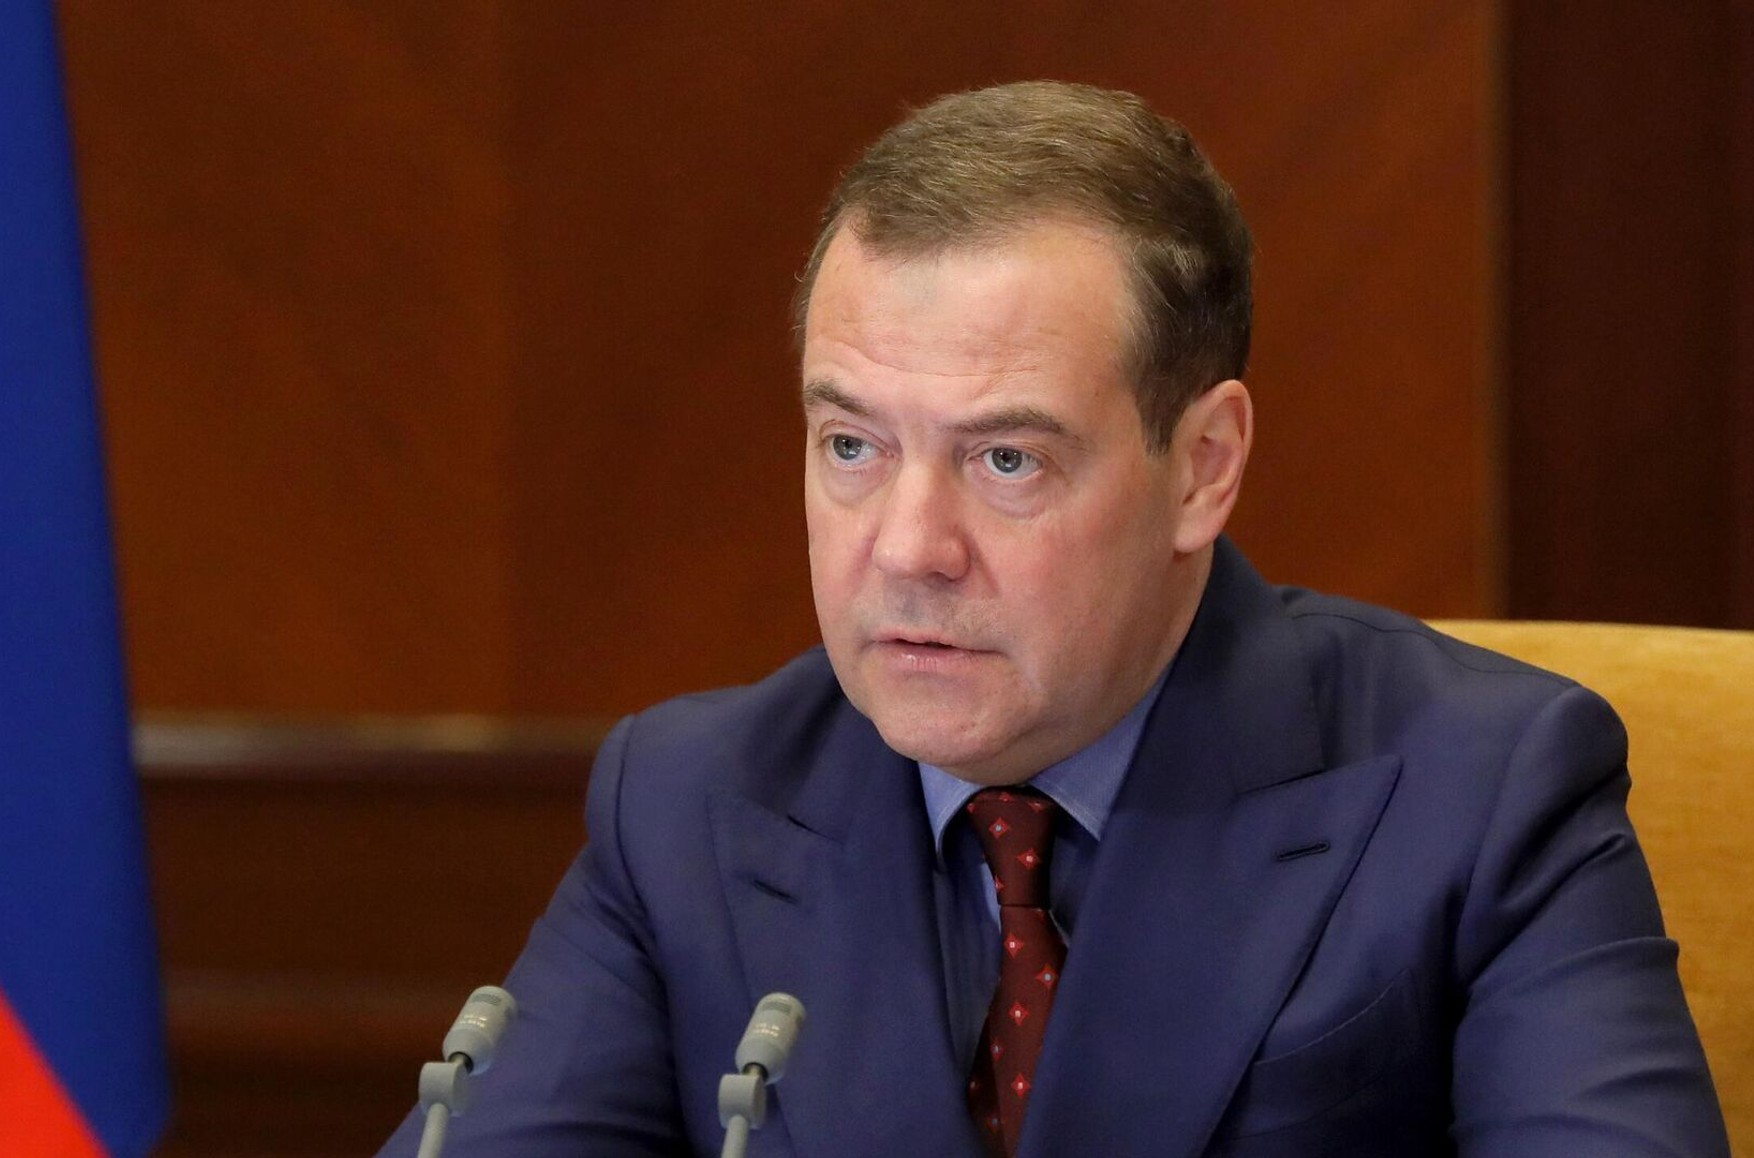 Медведев заявил, что для всех жителей Украины «наступит одномоментно судный день» в случае нападения на Крым 